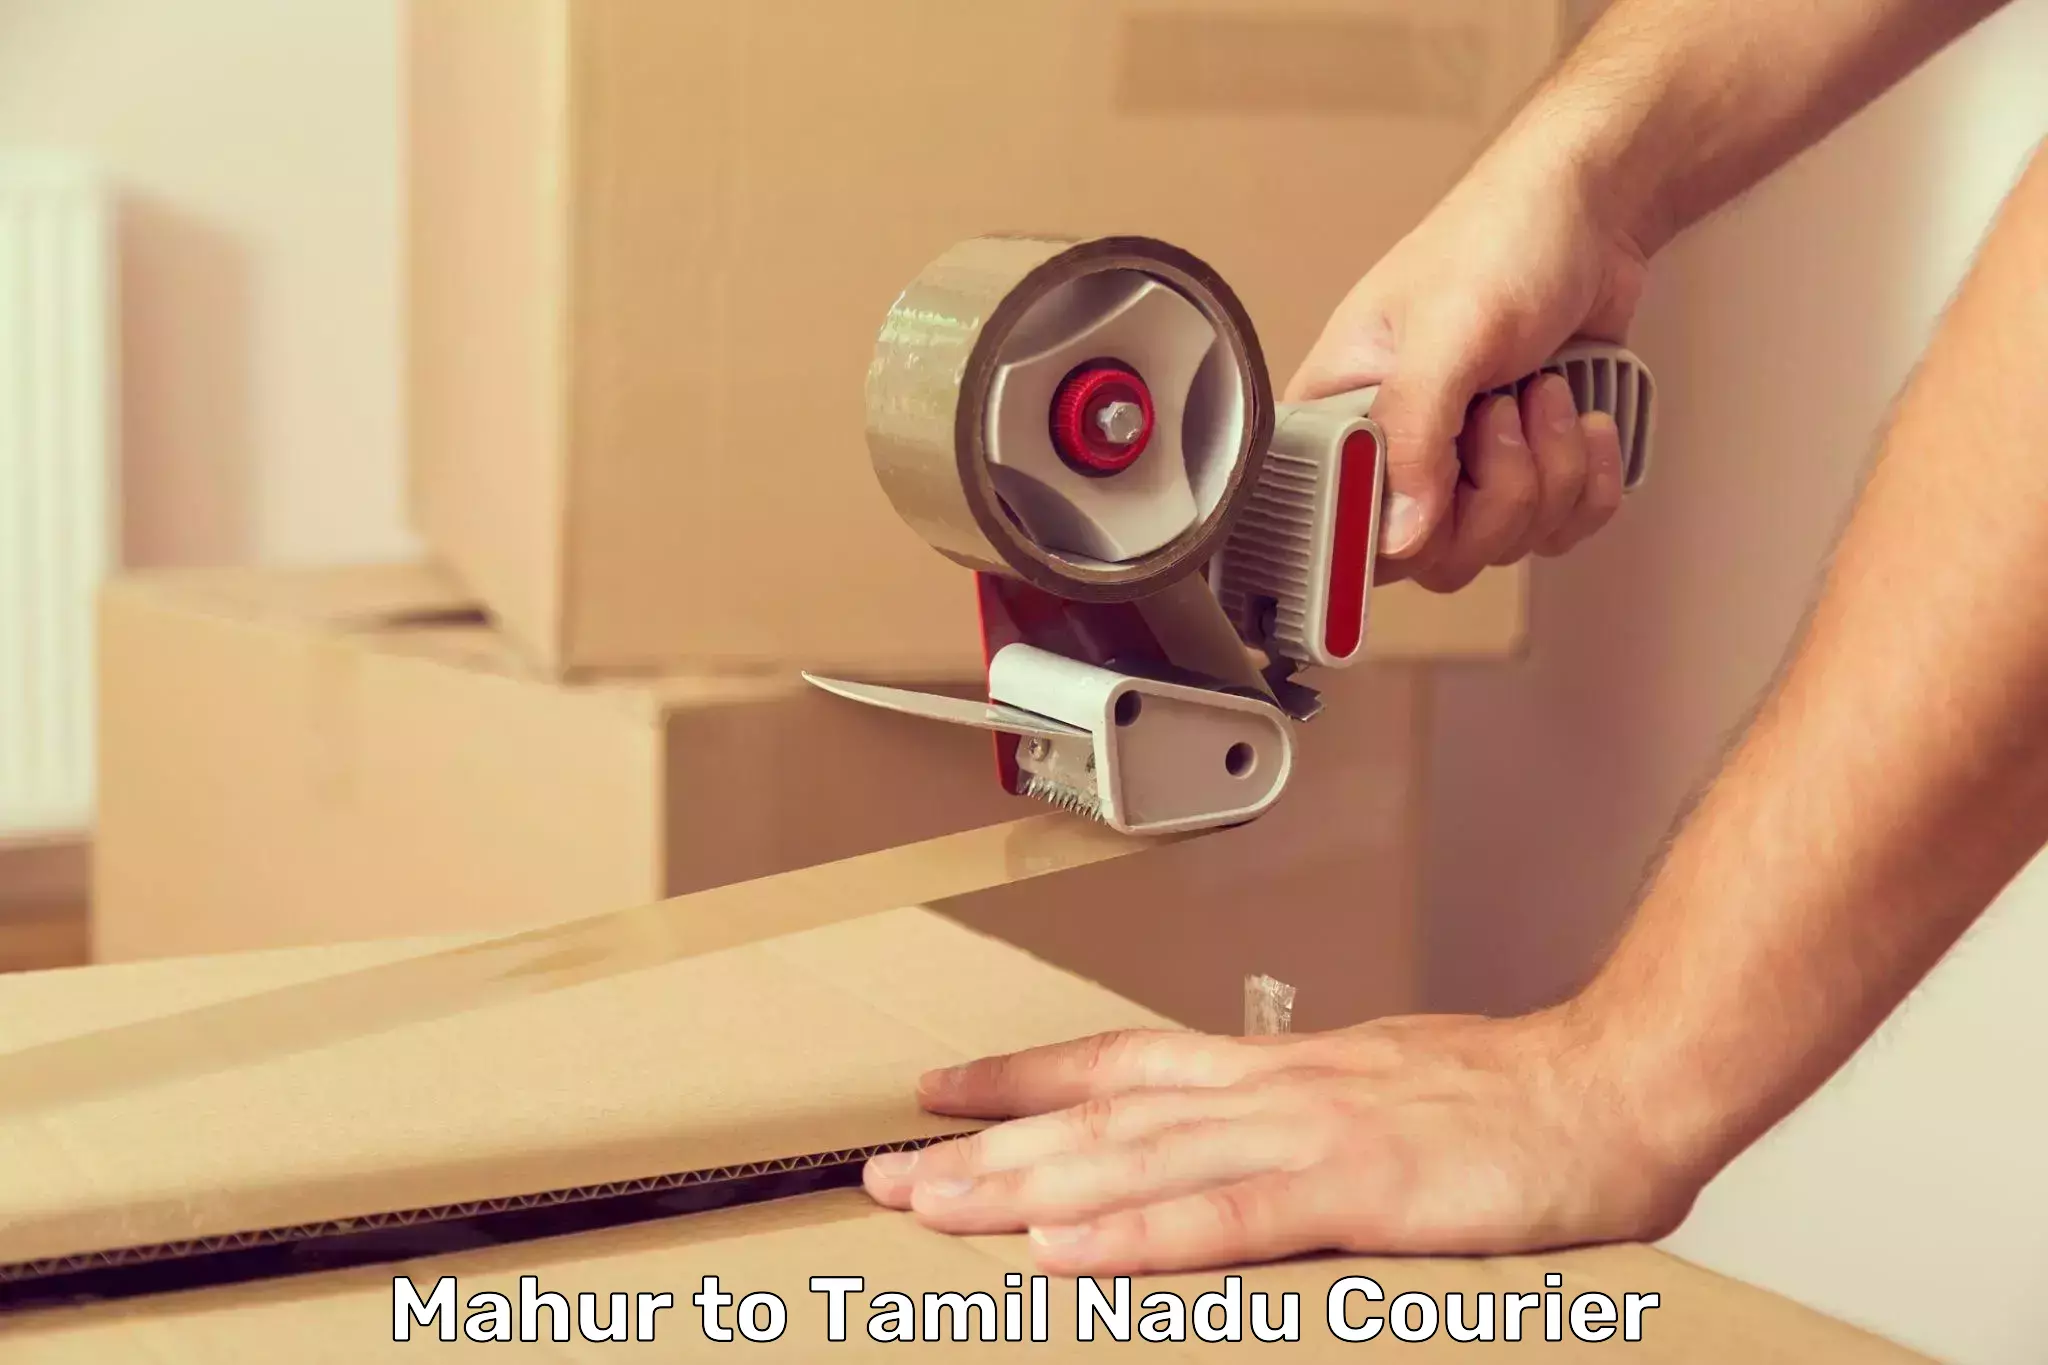 Courier membership Mahur to Tirupur